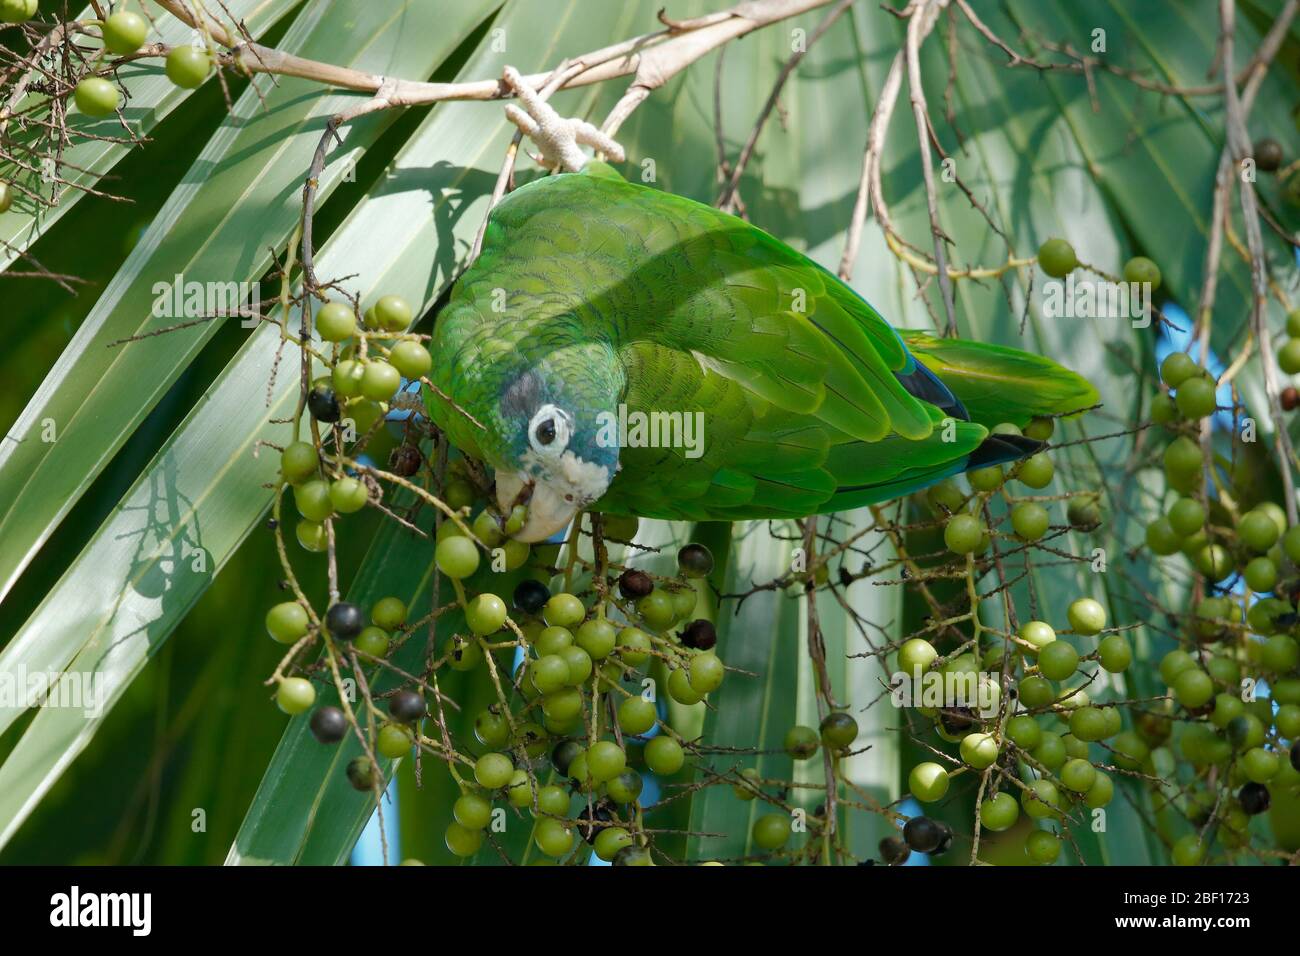 Die Hispaniolan amazon oder Hispaniolan Papagei ist eine Pflanzenart aus der Gattung der Papagei in der Familie Psittacidae. Stockfoto